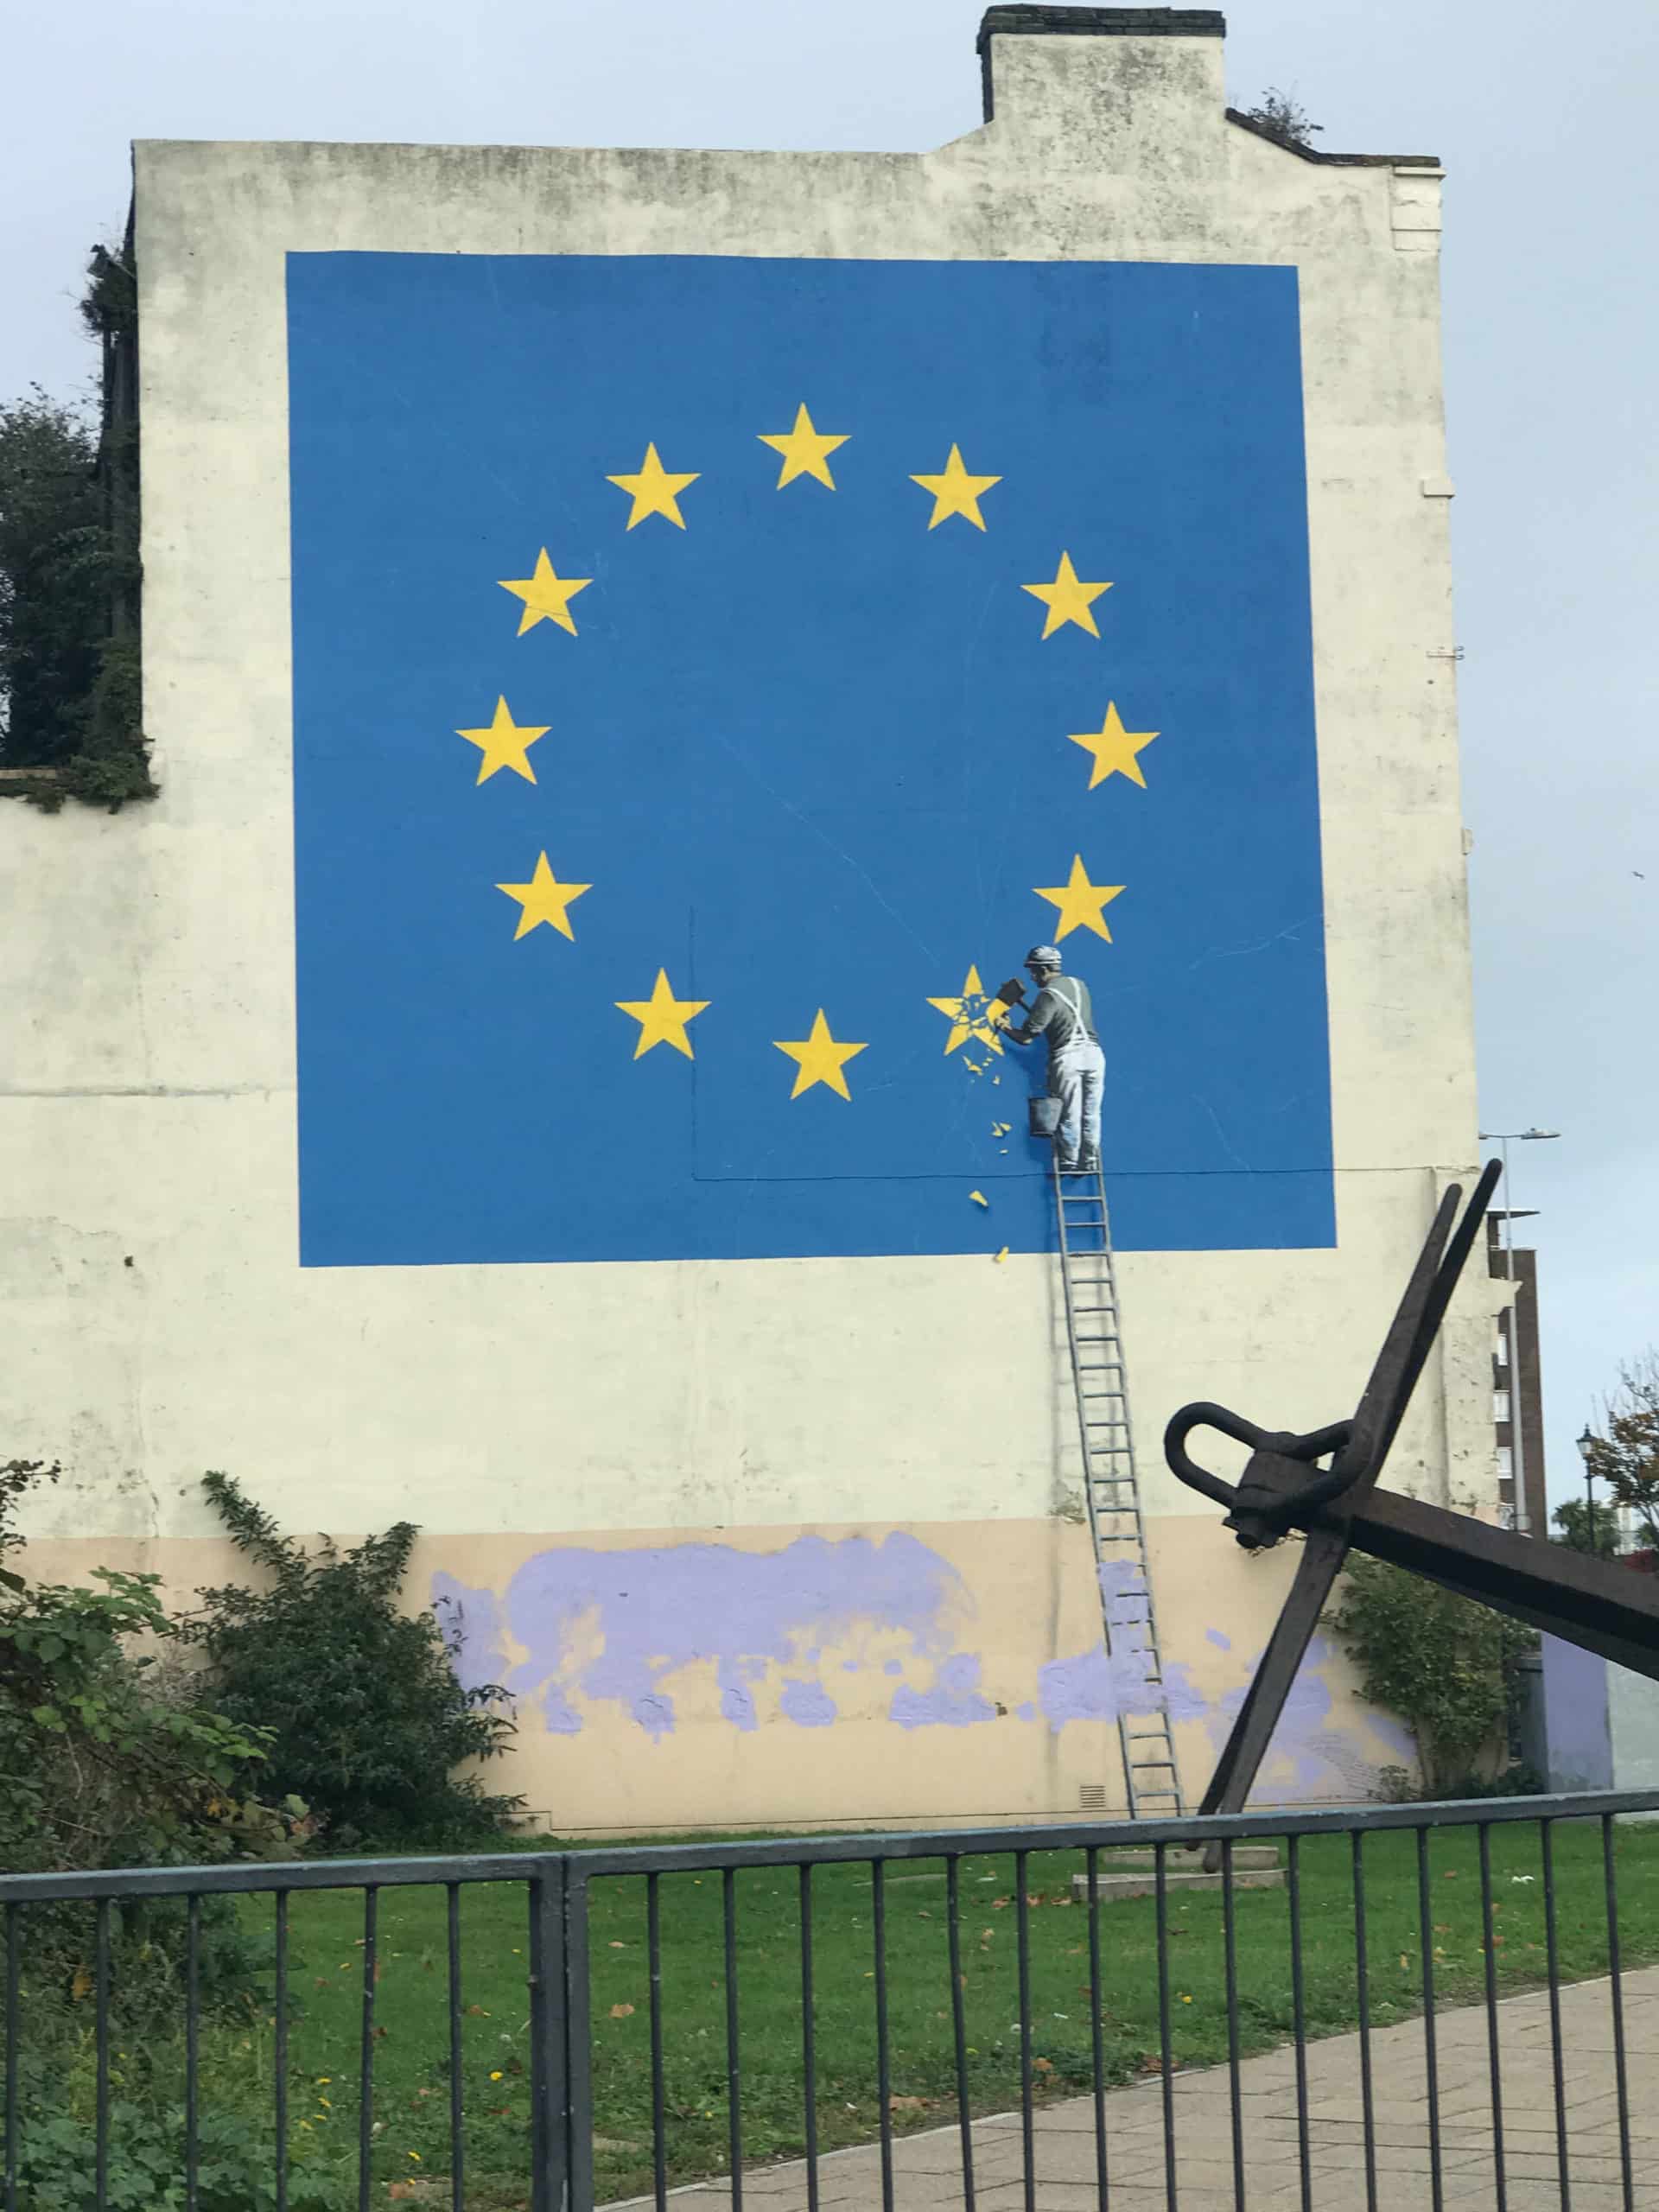 Banksy bestätigte, dass das mysteriöse Wandgemälde in Dover, auf dem eine von einem Arbeiter gemeißelte europäische Flagge zu sehen ist, von ihm stammt. Das Stück – das auf mysteriöse Weise über Nacht in einem Gebäude neben der A20 in der Nähe des Fährterminals von Dover auftauchte – zeigt die charakteristische Schablonenarbeit des Künstlers. Das Wandgemälde wurde am 20. August 2019 entfernt, höchstwahrscheinlich vom Künstler selbst.